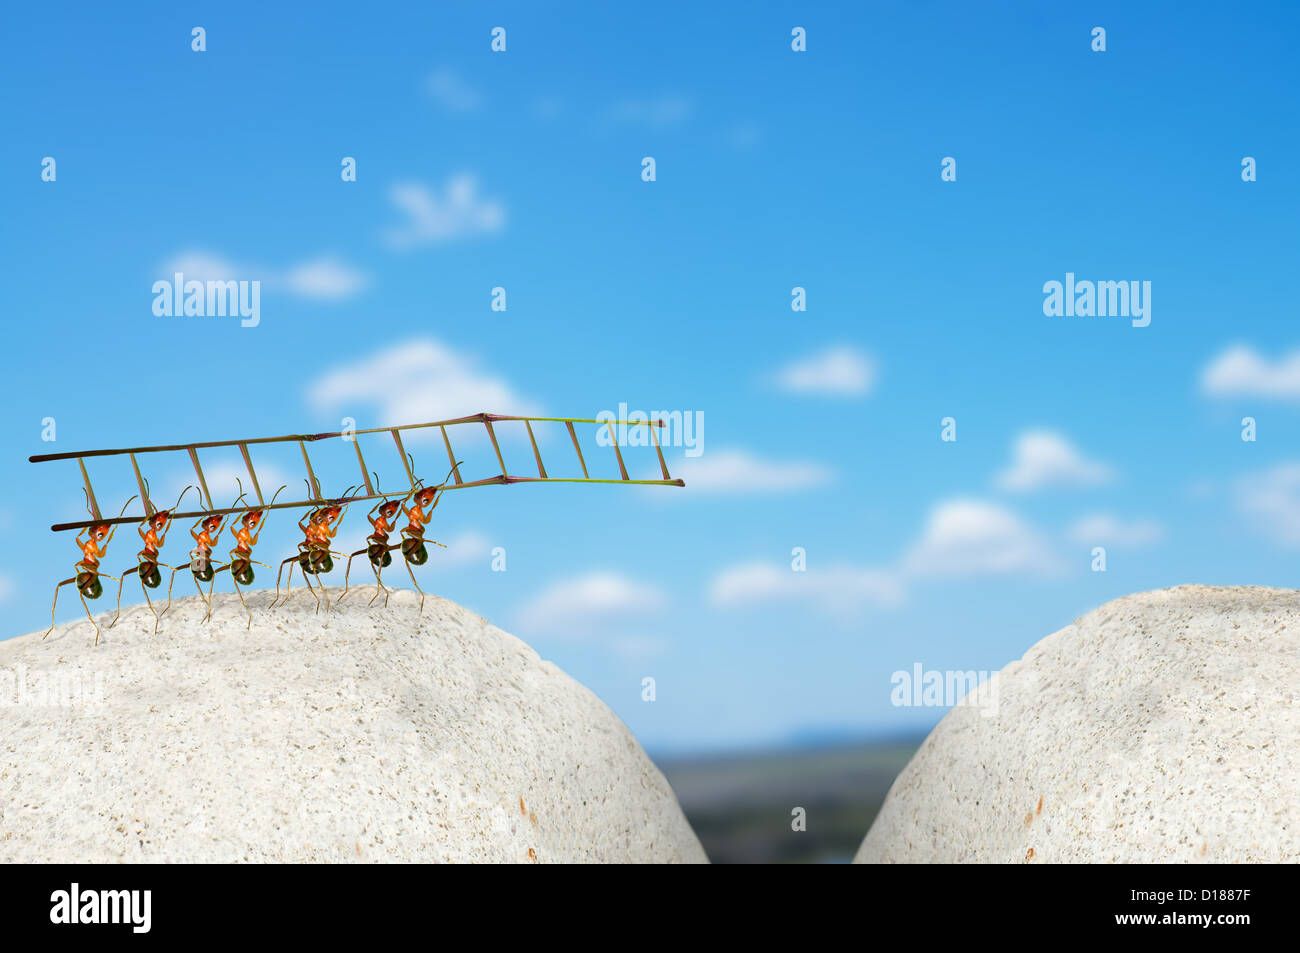 Ant engineers to build bridges Stock Photo